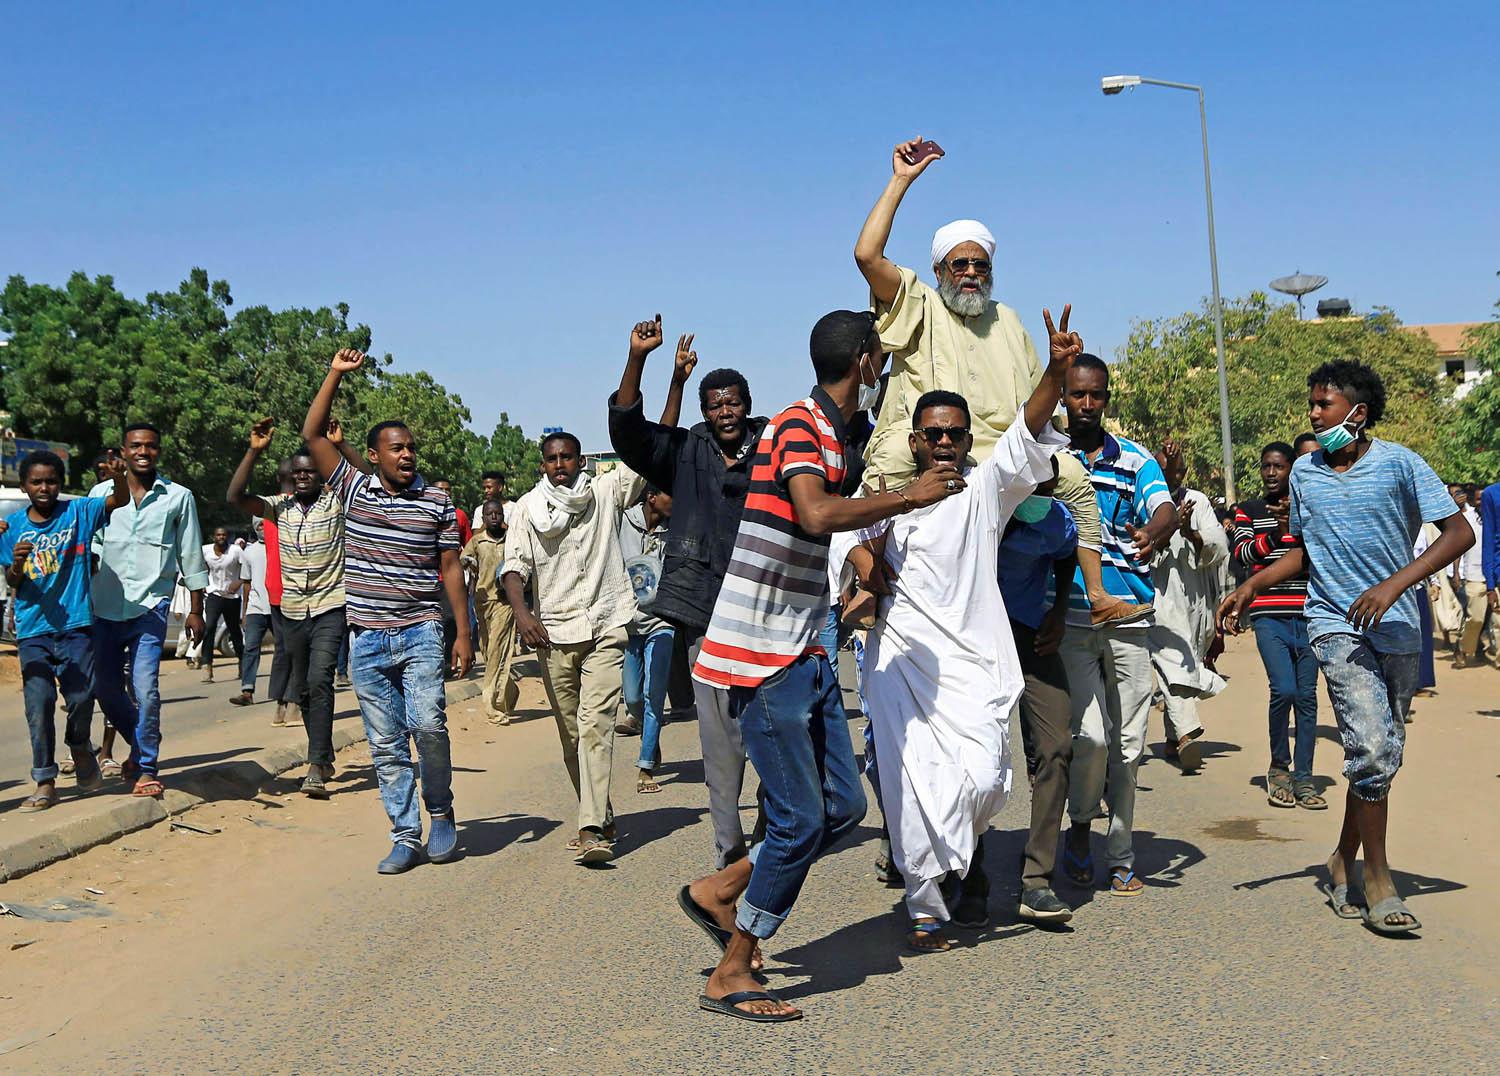 متظاهرون سودانيون في الخرطوم احتجاجا على سياسات البشير